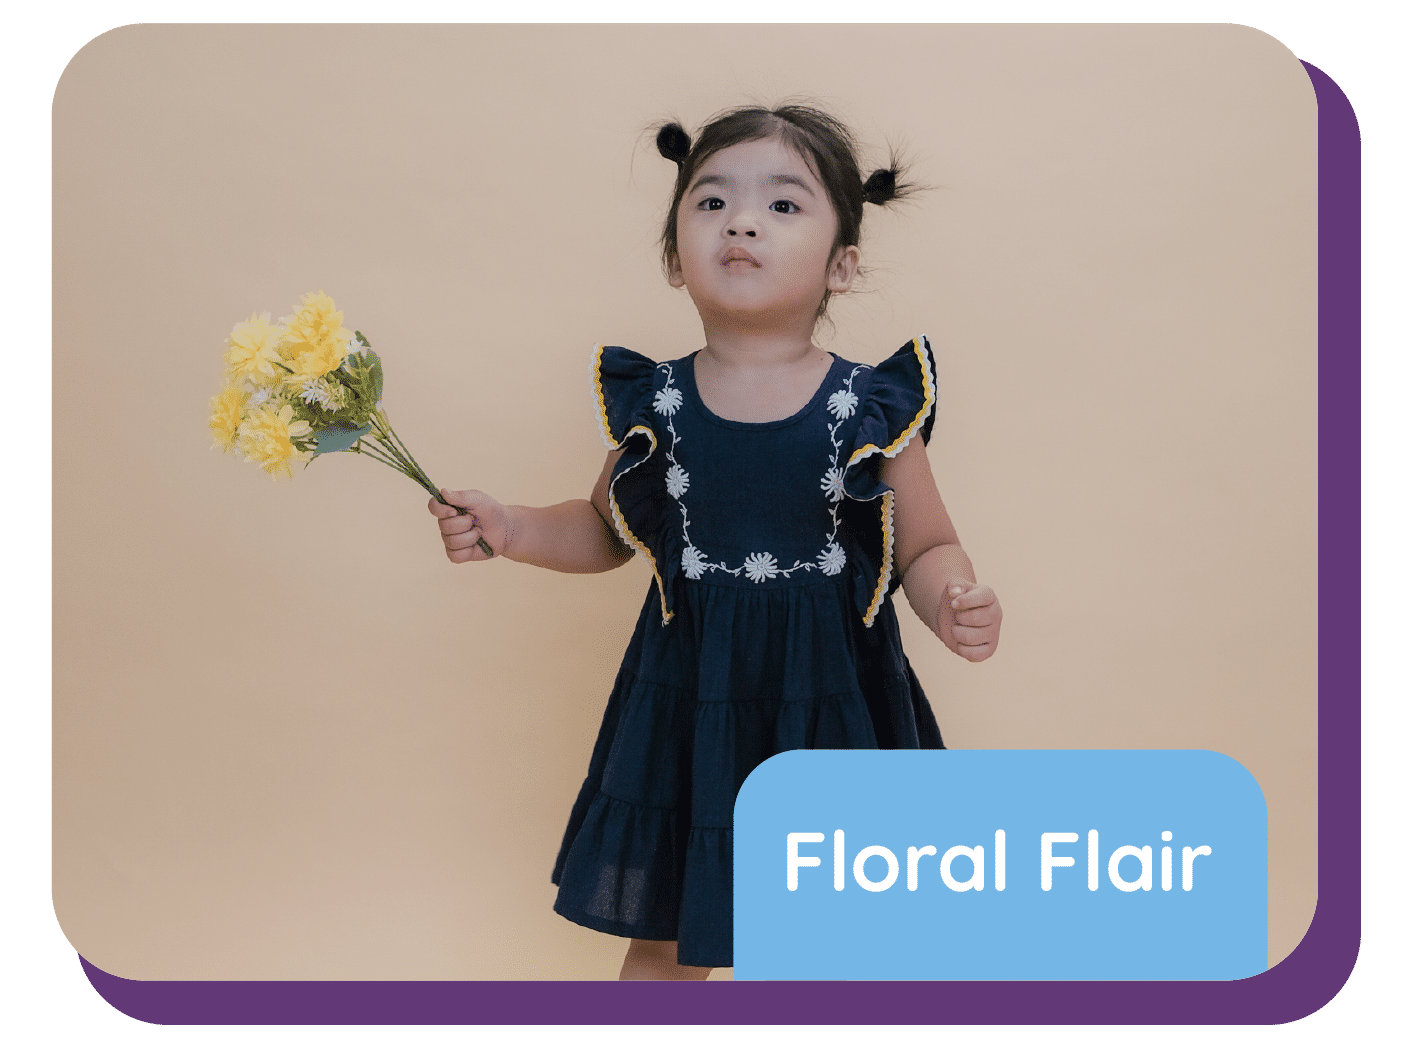 Floral Flair